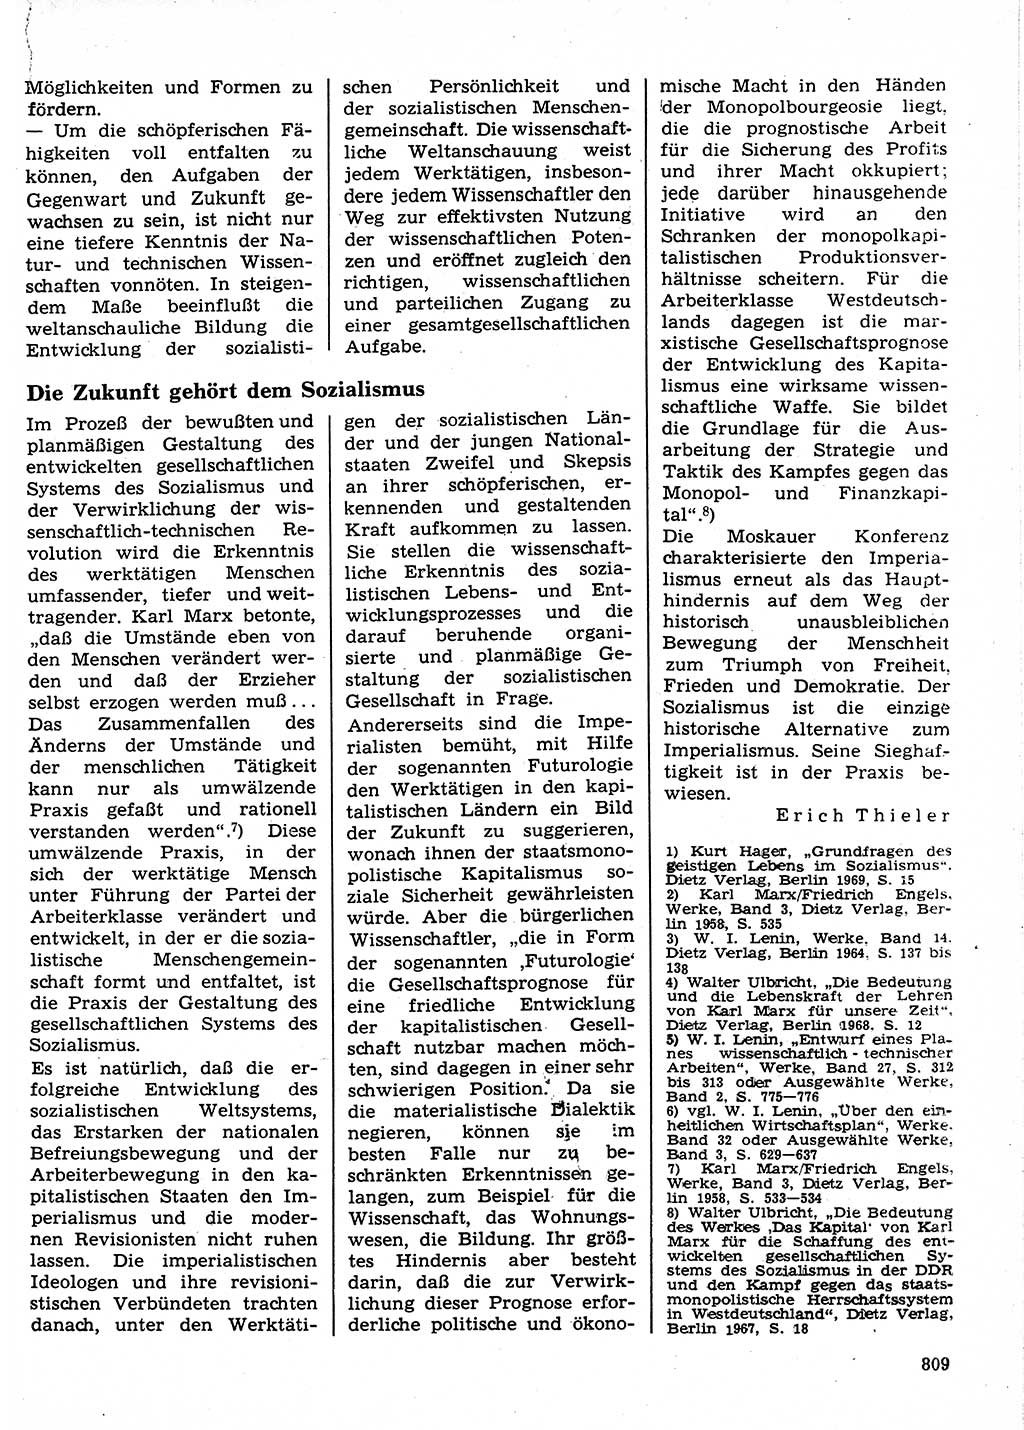 Neuer Weg (NW), Organ des Zentralkomitees (ZK) der SED (Sozialistische Einheitspartei Deutschlands) für Fragen des Parteilebens, 24. Jahrgang [Deutsche Demokratische Republik (DDR)] 1969, Seite 809 (NW ZK SED DDR 1969, S. 809)